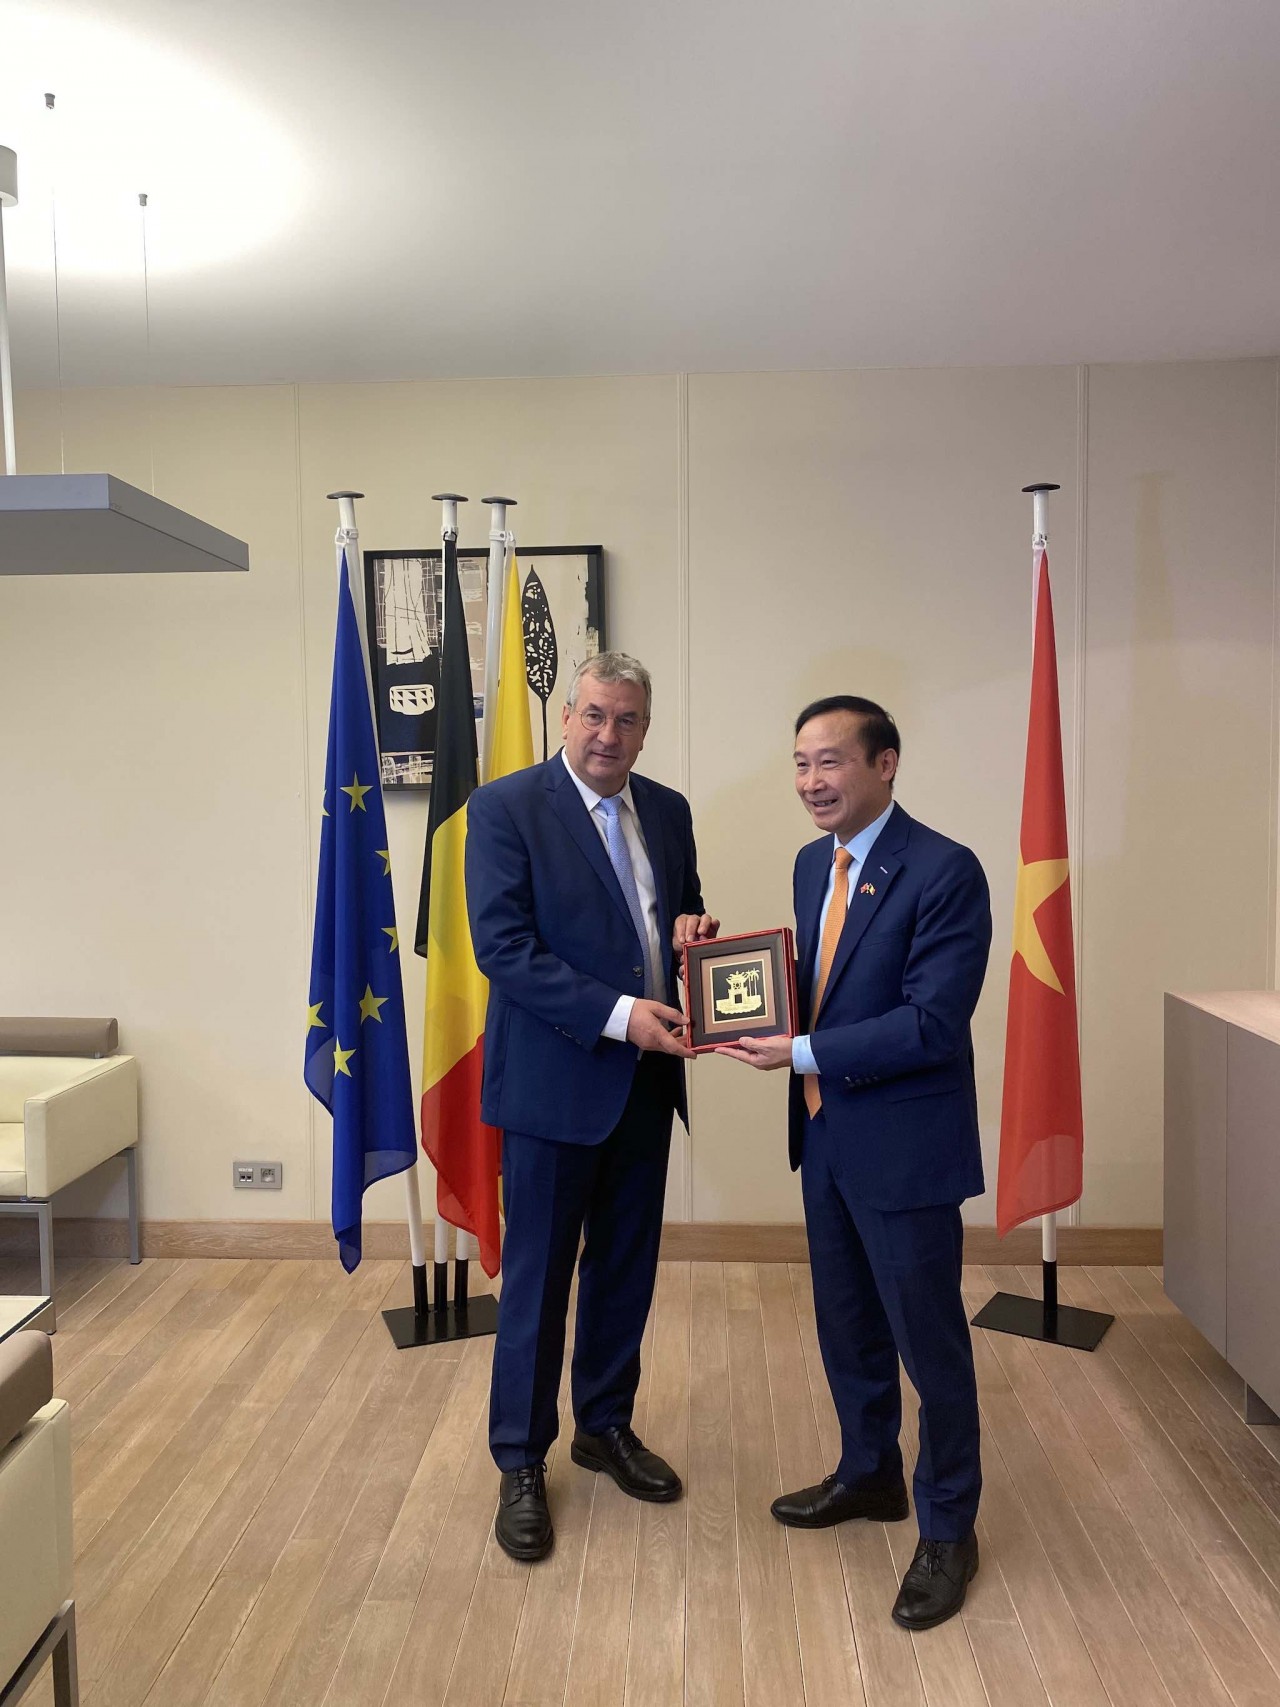 Tăng cường hợp tác giữa Việt Nam và Cộng đồng người Bỉ nói tiếng Pháp tại Wallonie-Bruxelles